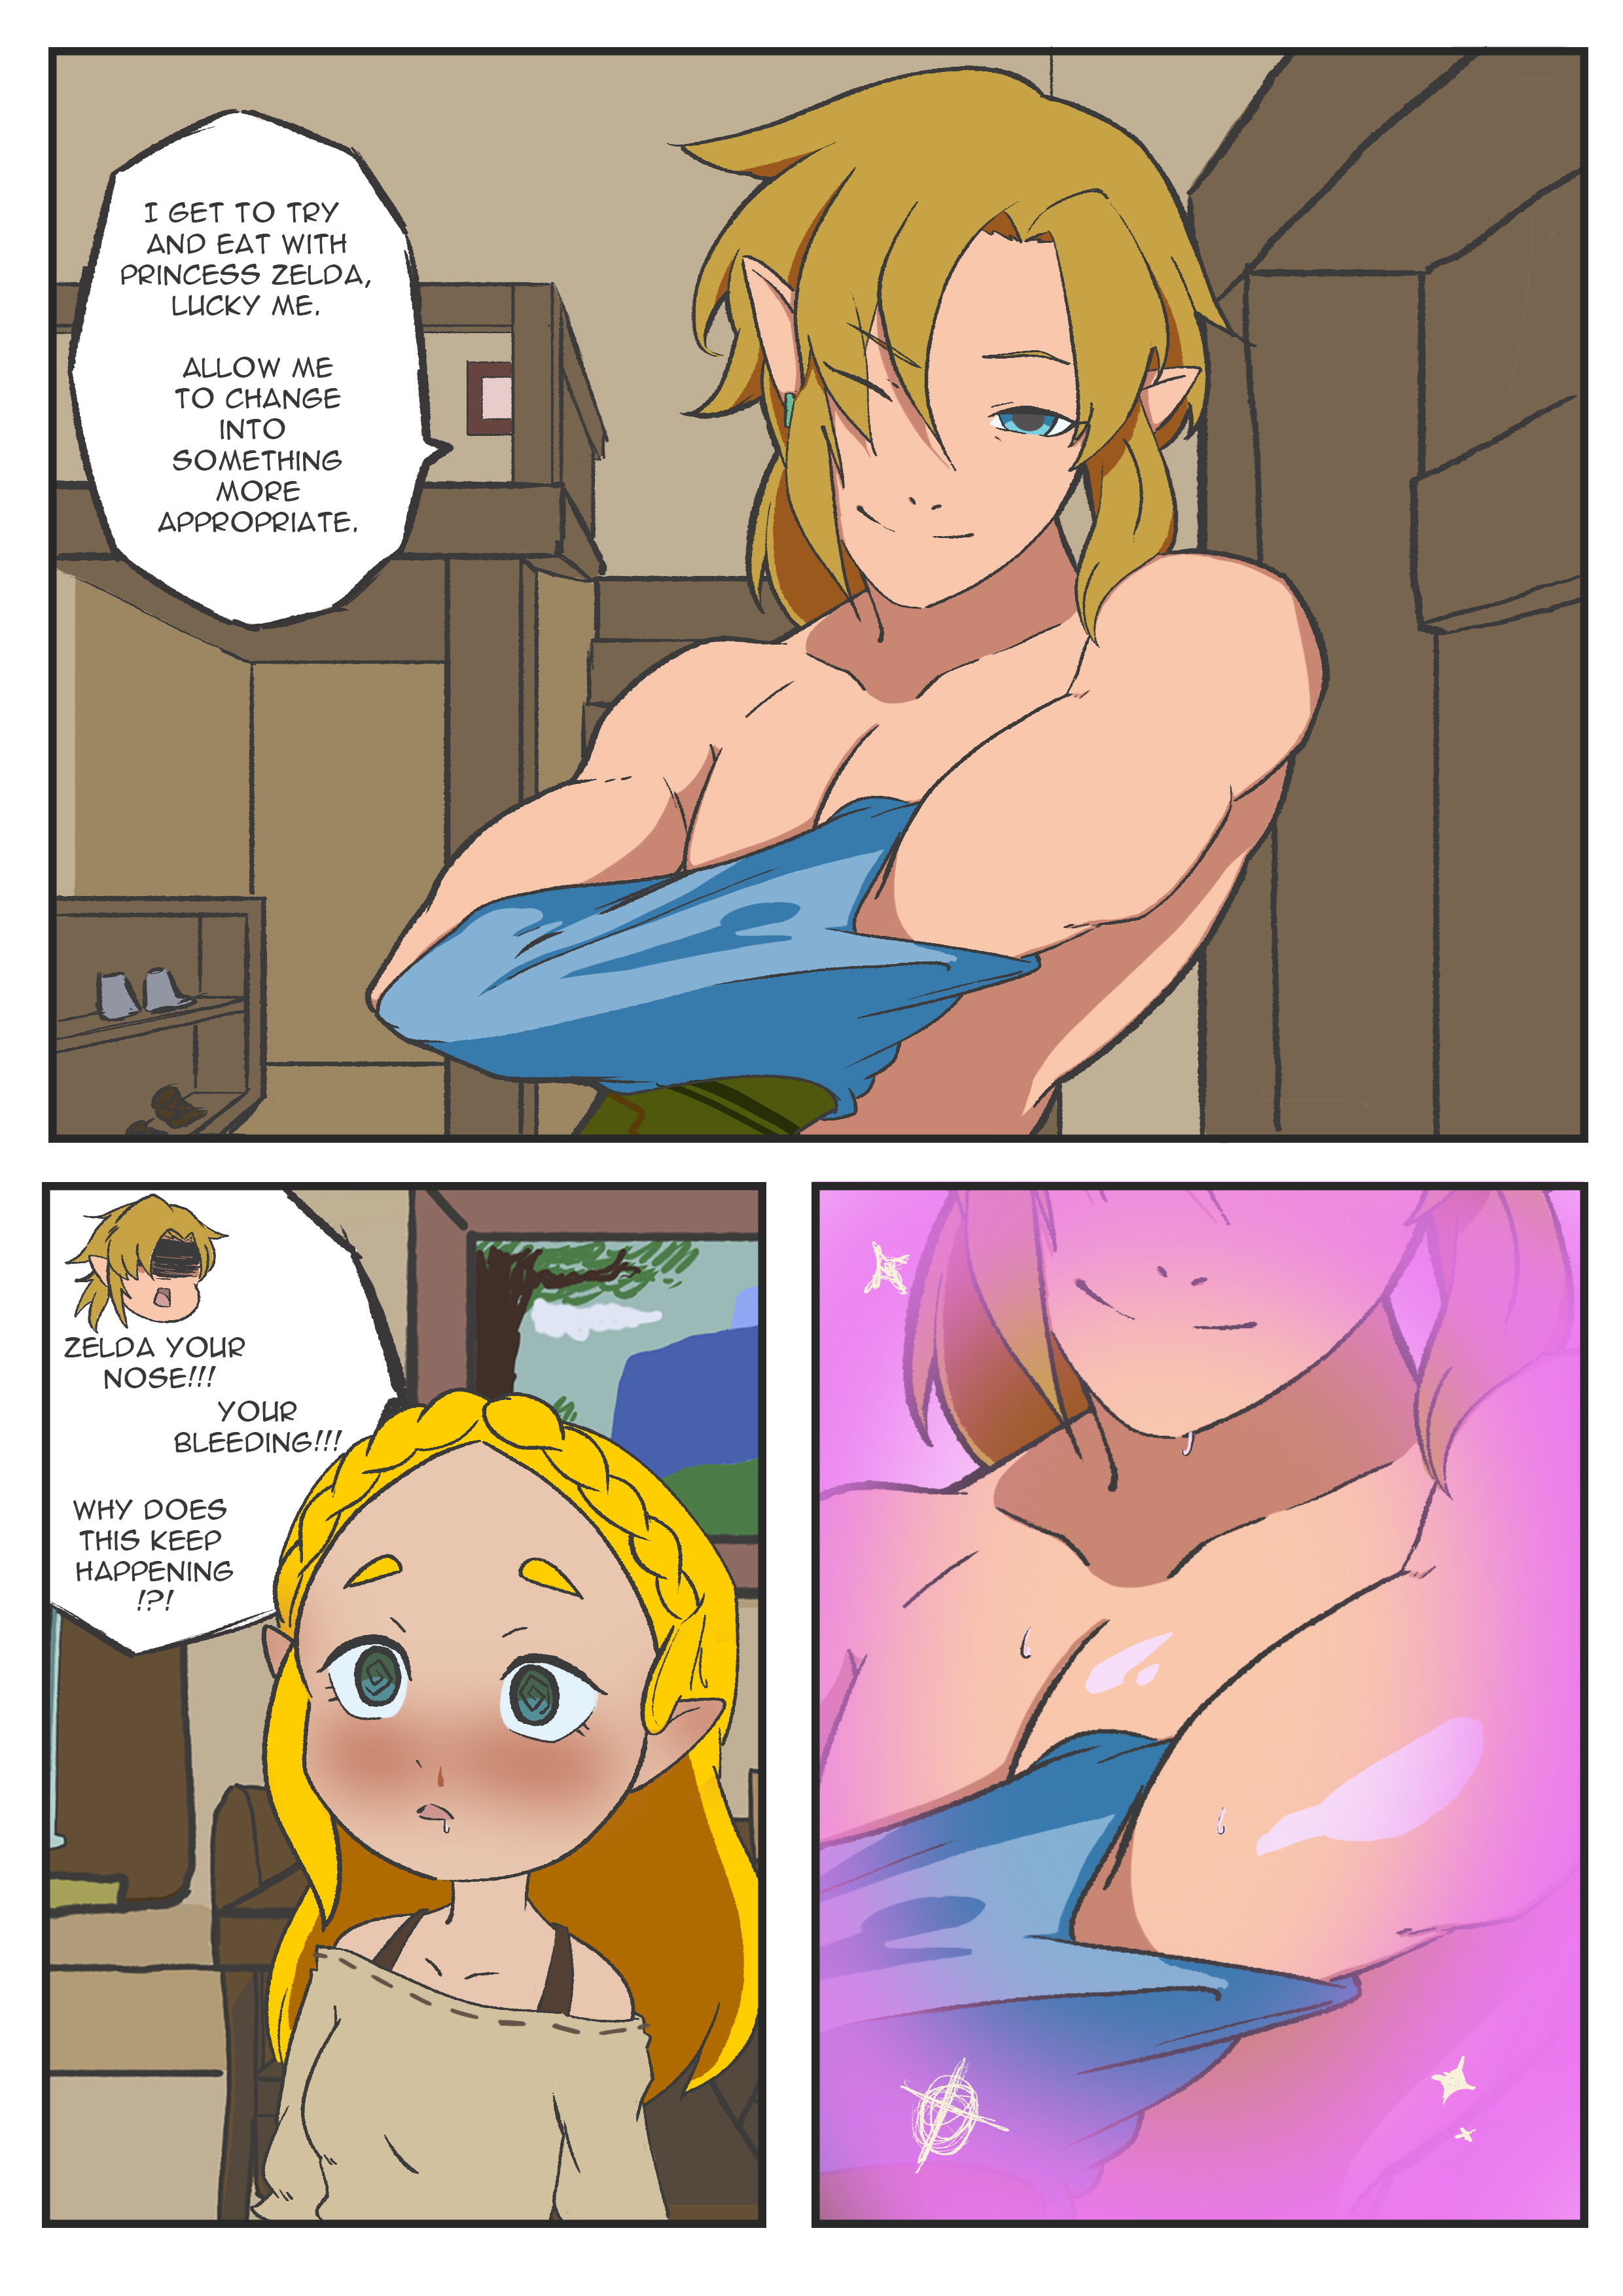 Zelda Comic: Heart of a Champion - 3 #Zelda #Link #breathOfTheWild #Comic  #botw #Yiga